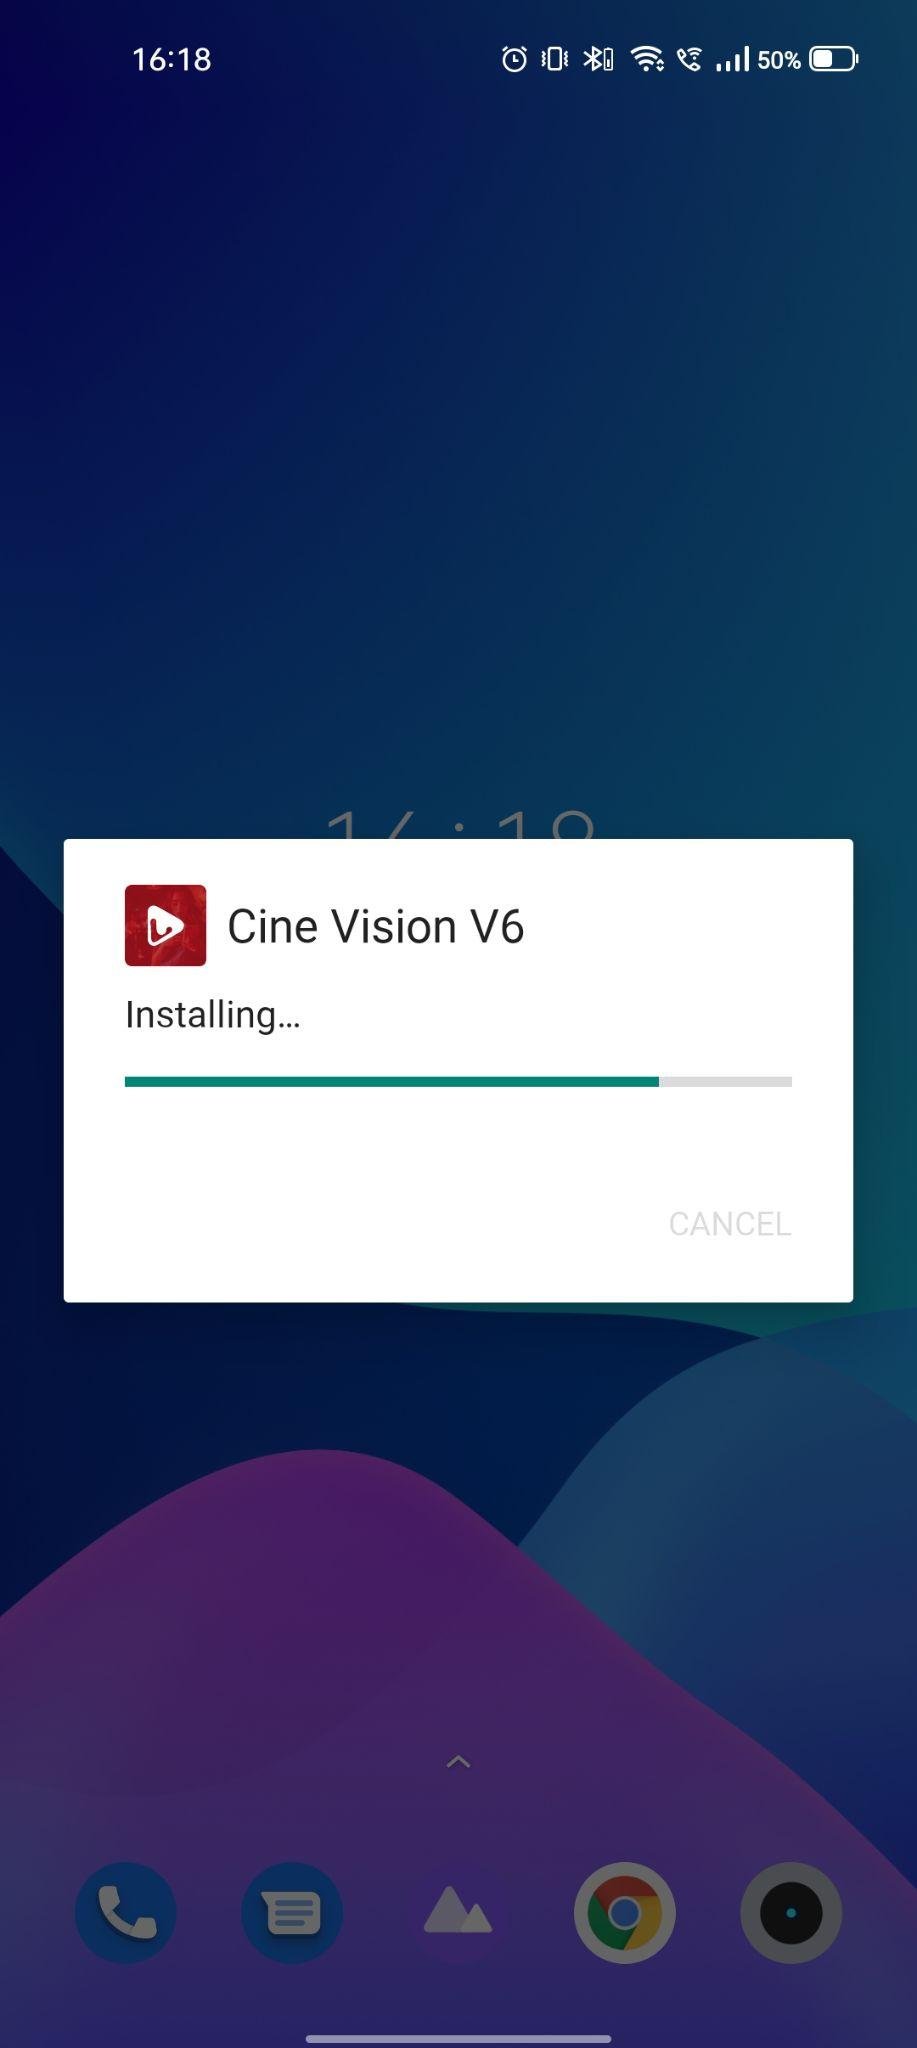 cine vision v6 apk installing